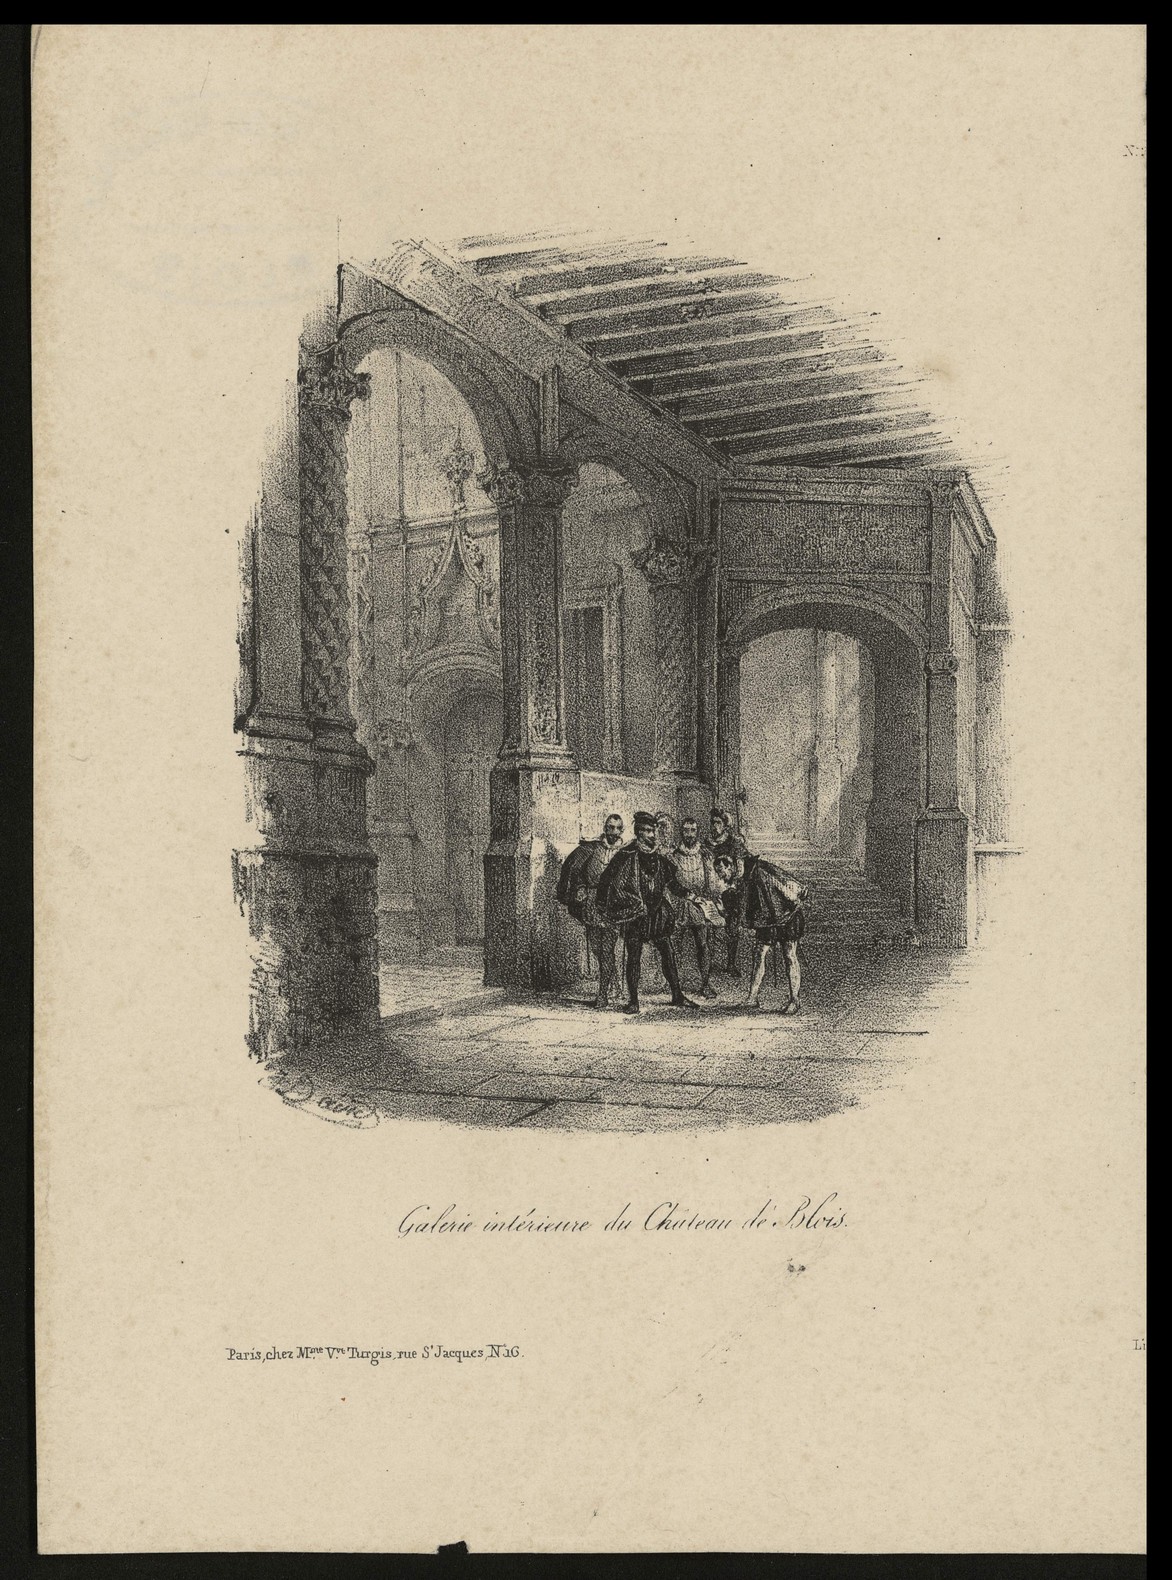 J. David, La galerie Louis XII au château de Blois, lithographie vers 1830